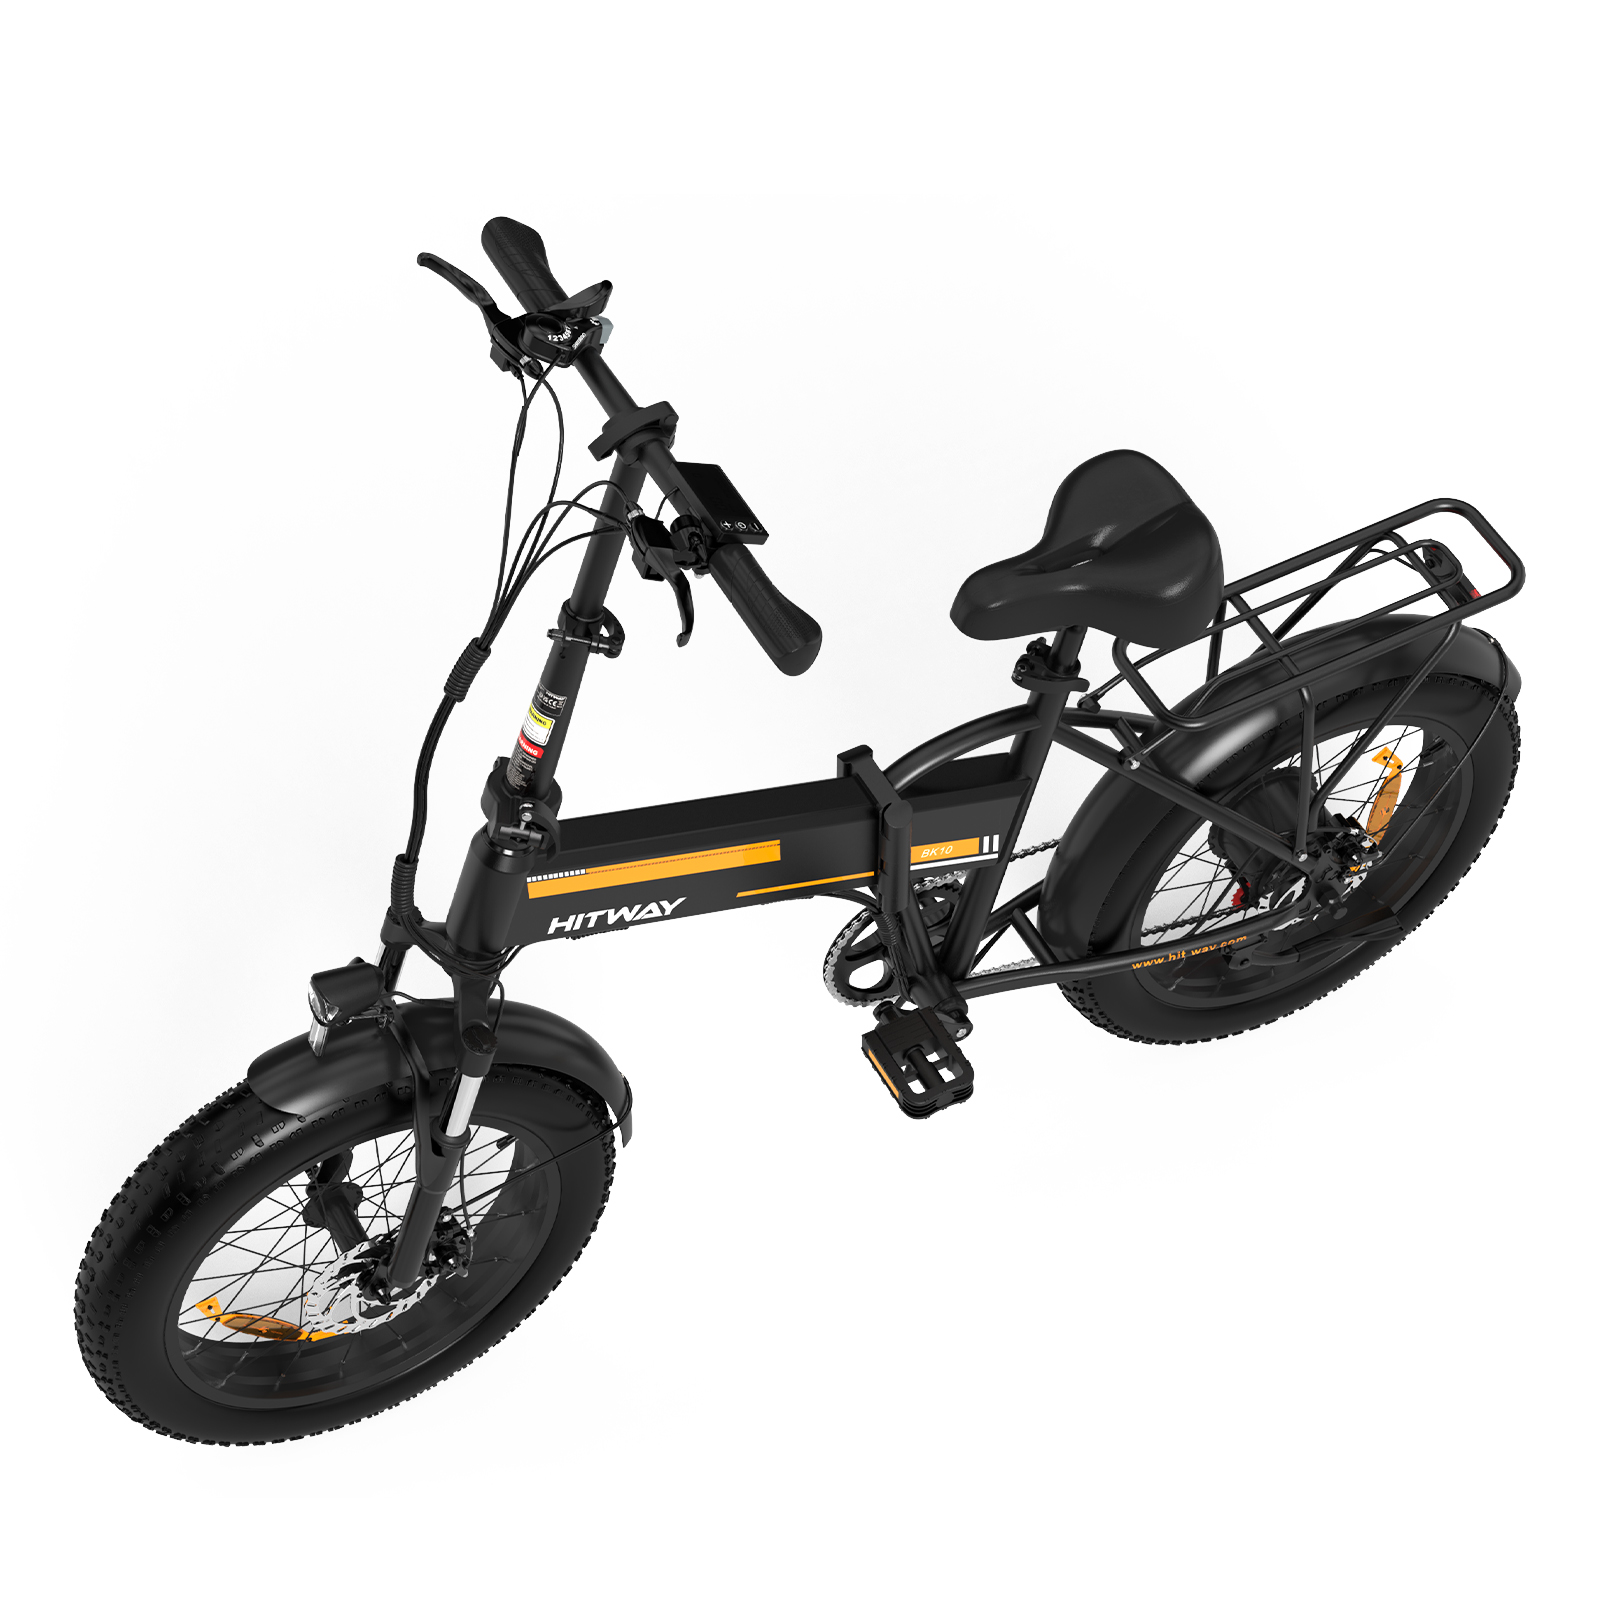 20 Unisex-Rad, Mountainbike und (Laufradgröße: BK10 432, Zoll, Schwarz Orange) HITWAY